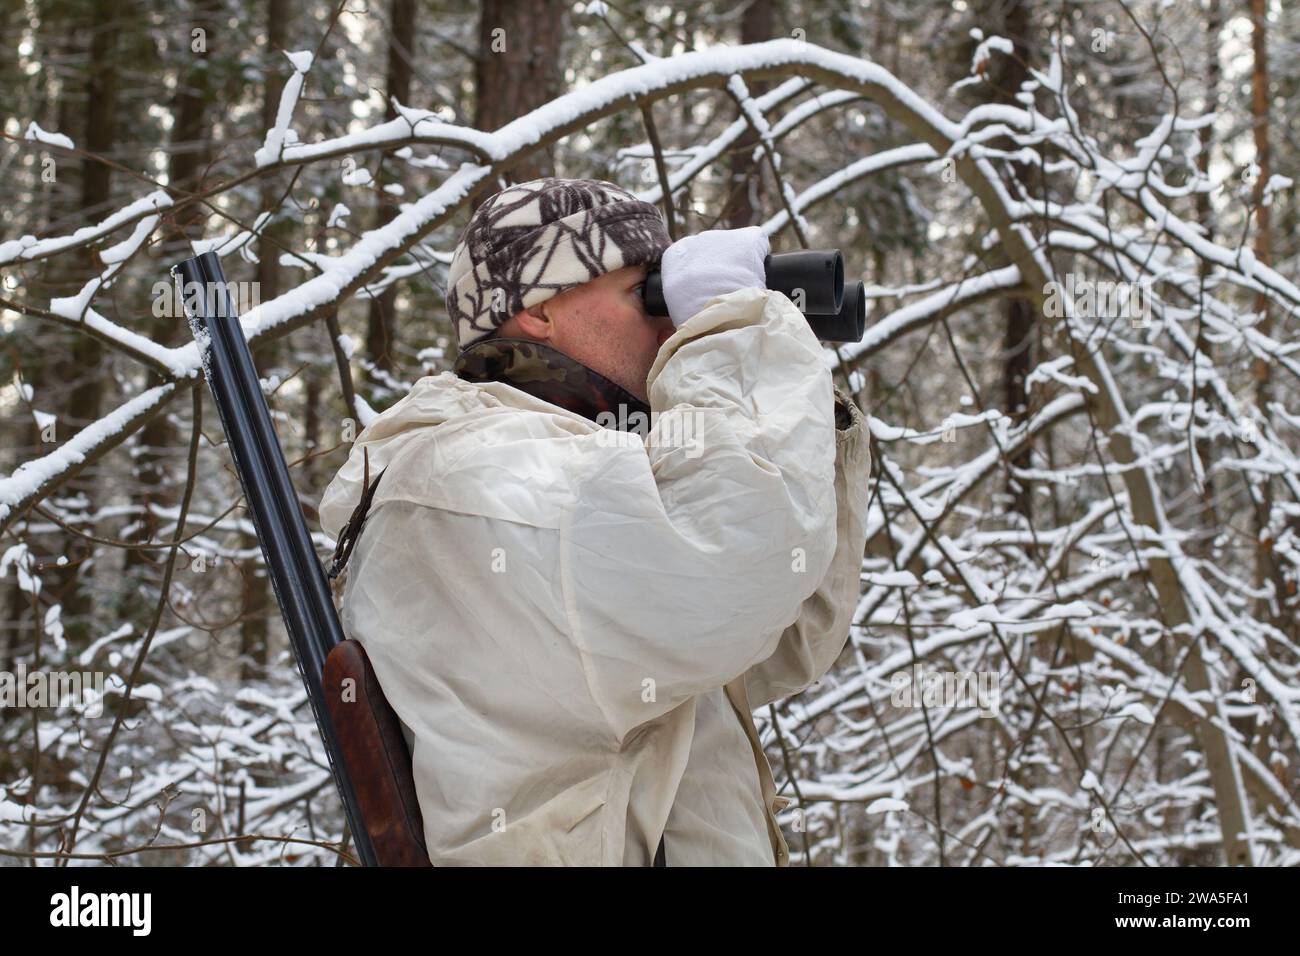 Un chasseur vêtu d'un camouflage blanc, avec un fusil de chasse sur l'épaule, regarde à travers des jumelles dans la forêt nordique couverte de neige pendant un h d'hiver Banque D'Images